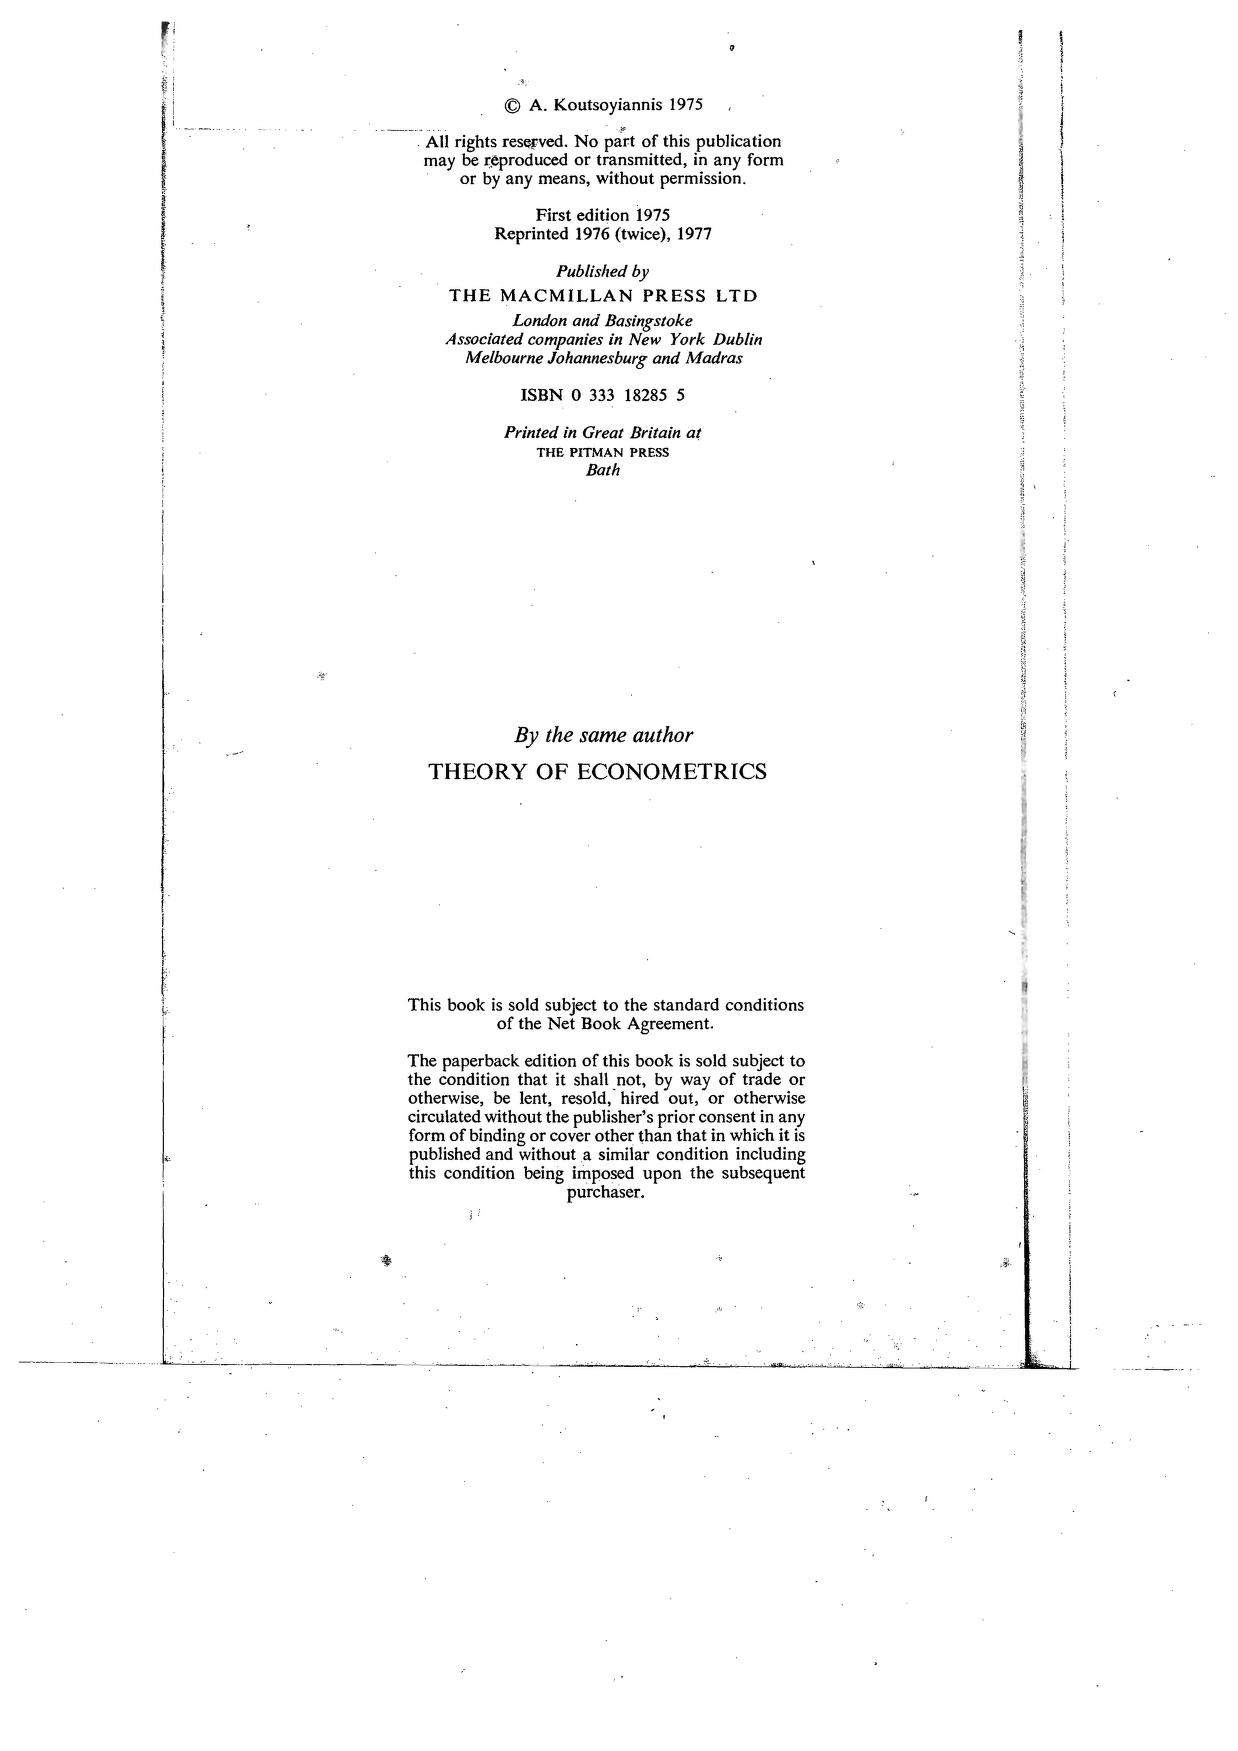 a koutsoyiannis modern microeconomics 2nd edition macmillan pdf download